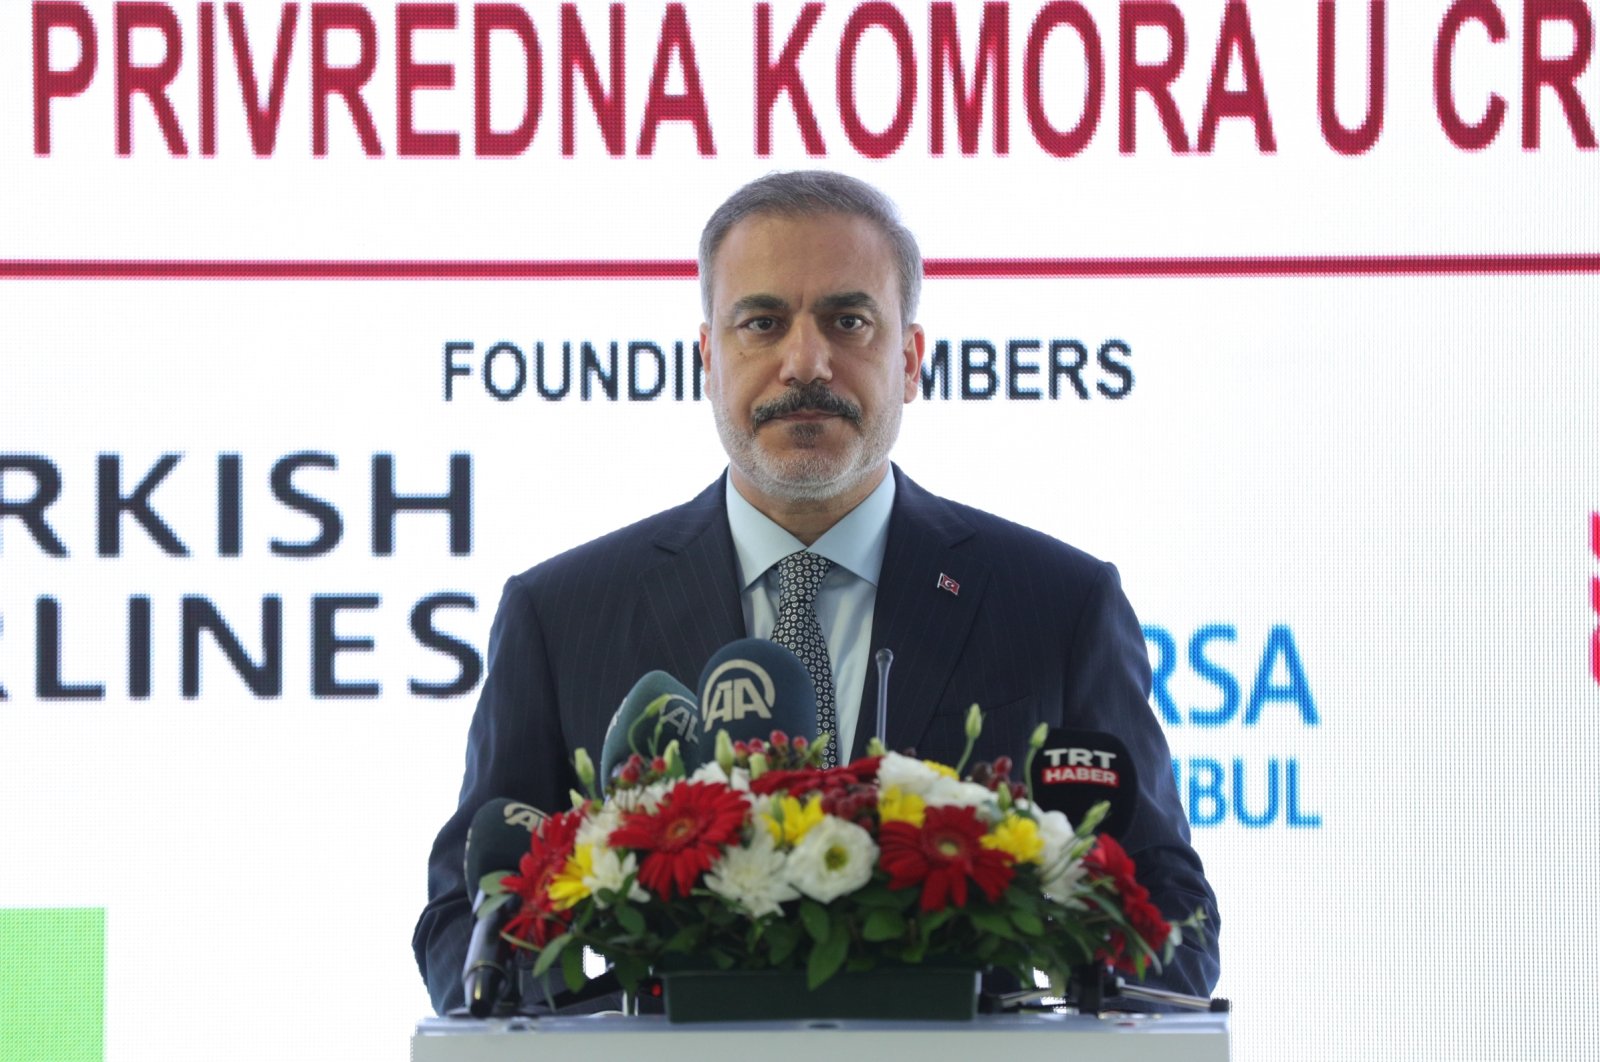 FM Fidan meresmikan kamar dagang baru Türkiye di Montenegro